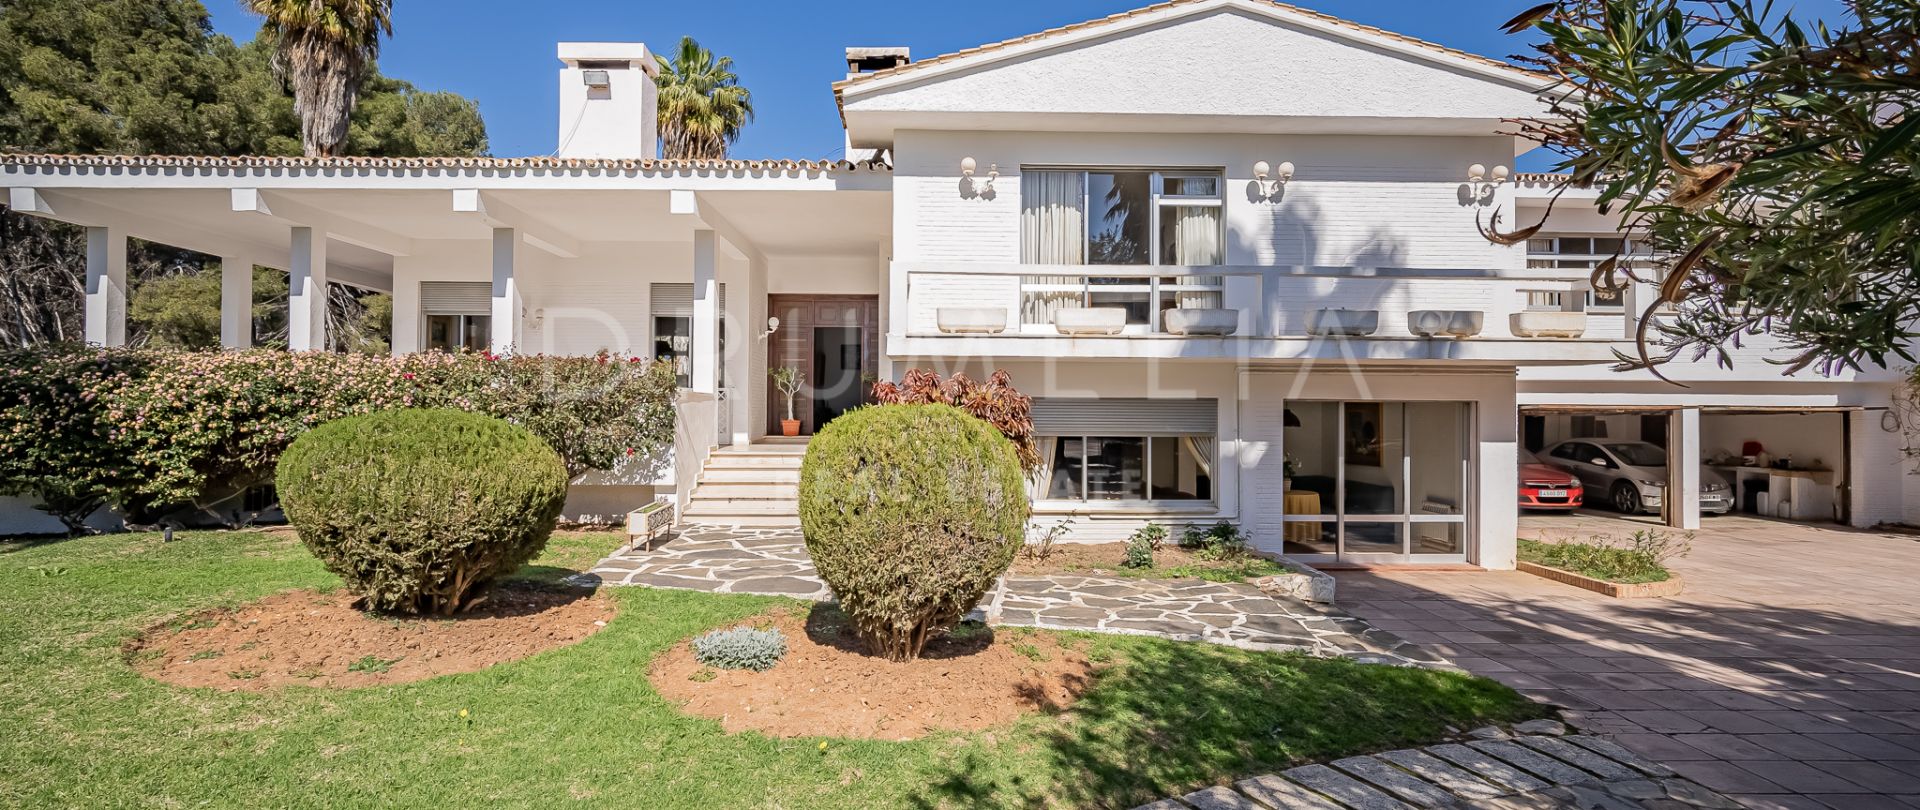 Superb Mediterranean Luxury House with Spectacular Sea Views, El Mirador,Marbella